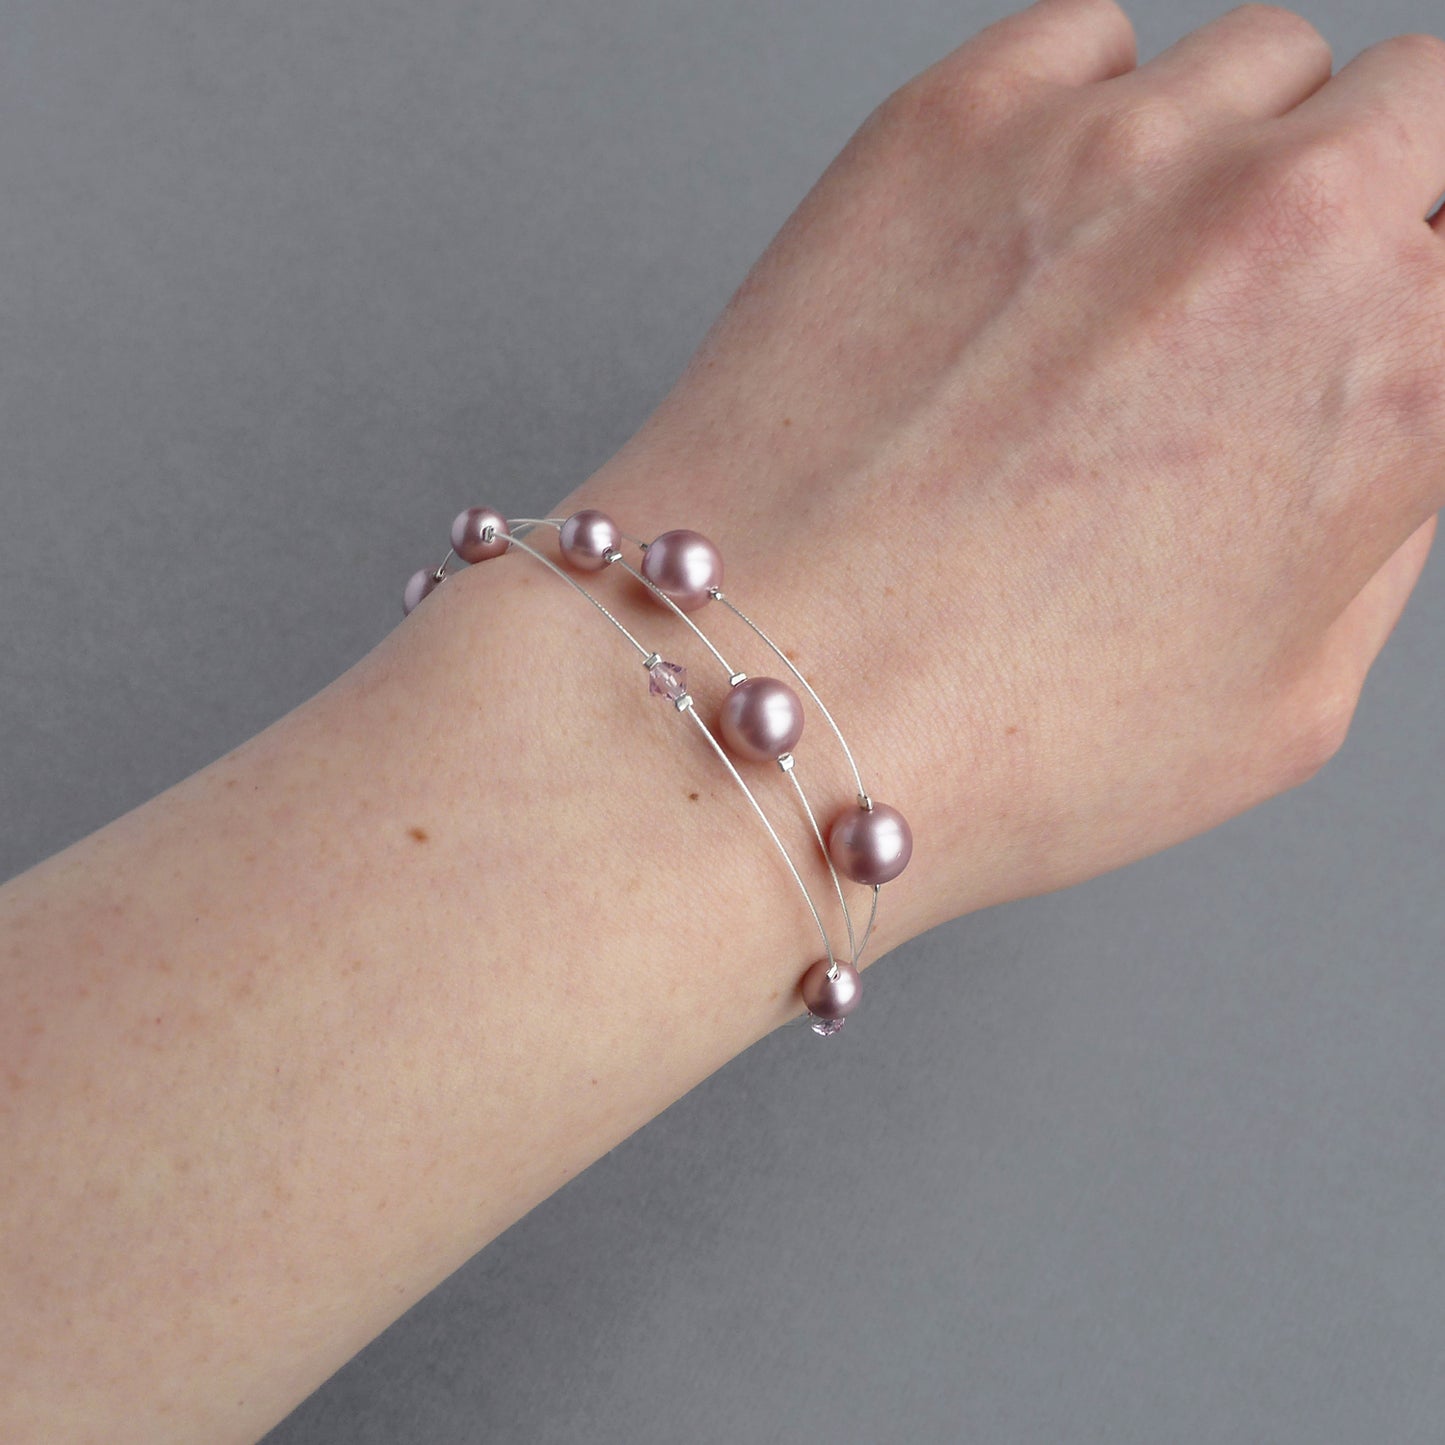 Dusty rose pink pearl bracelet